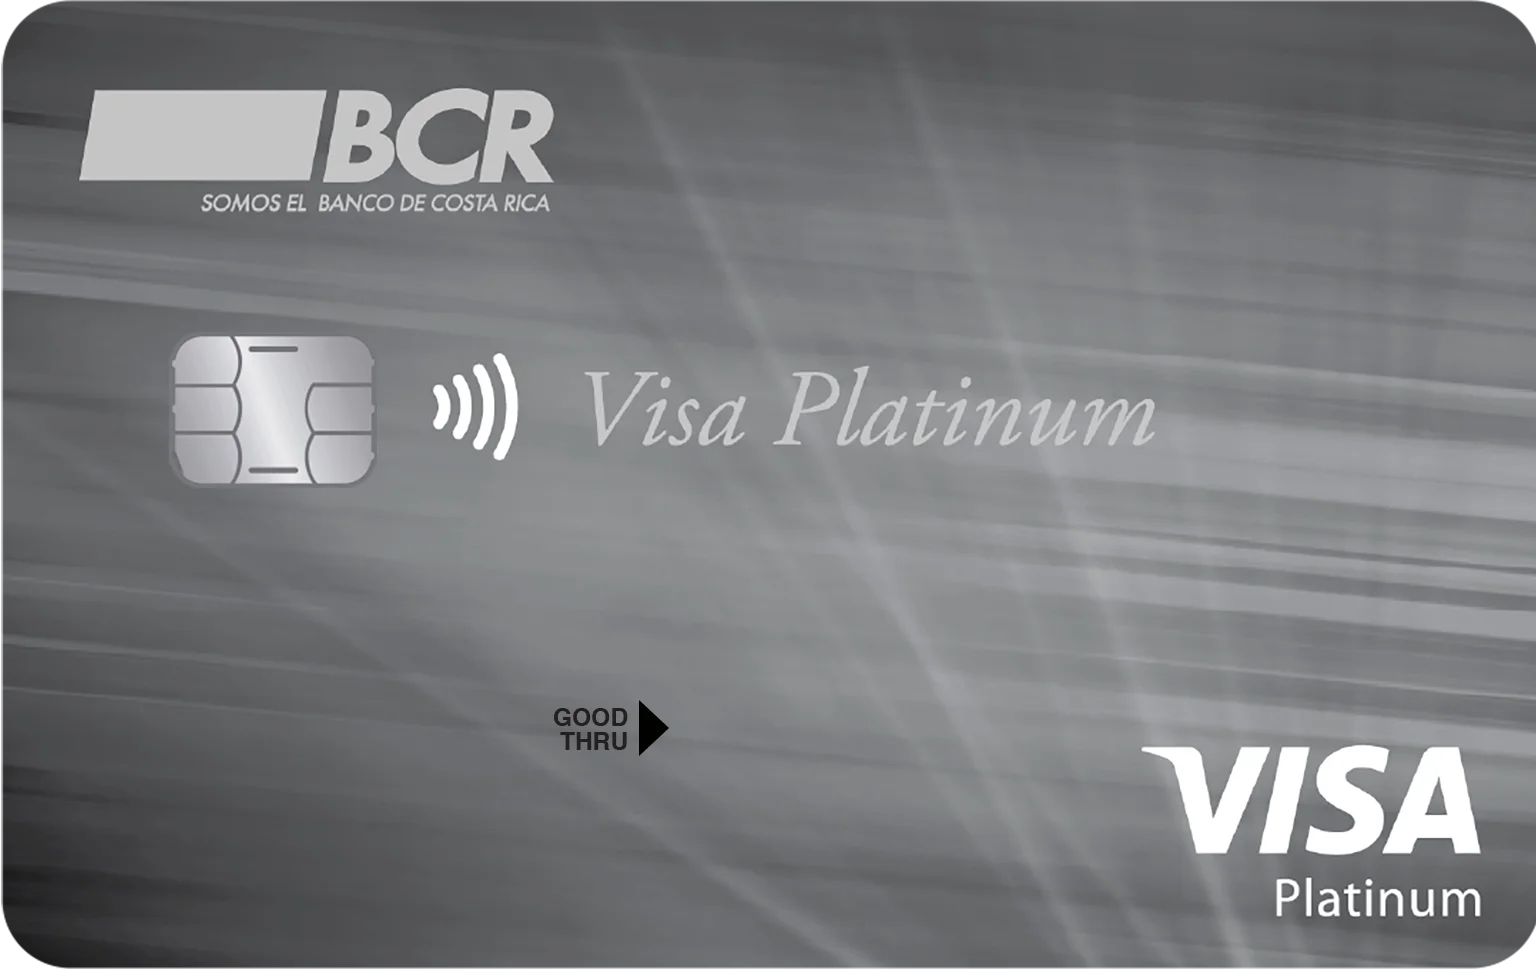 Imagen de la tarjeta de débito Visa Platinum